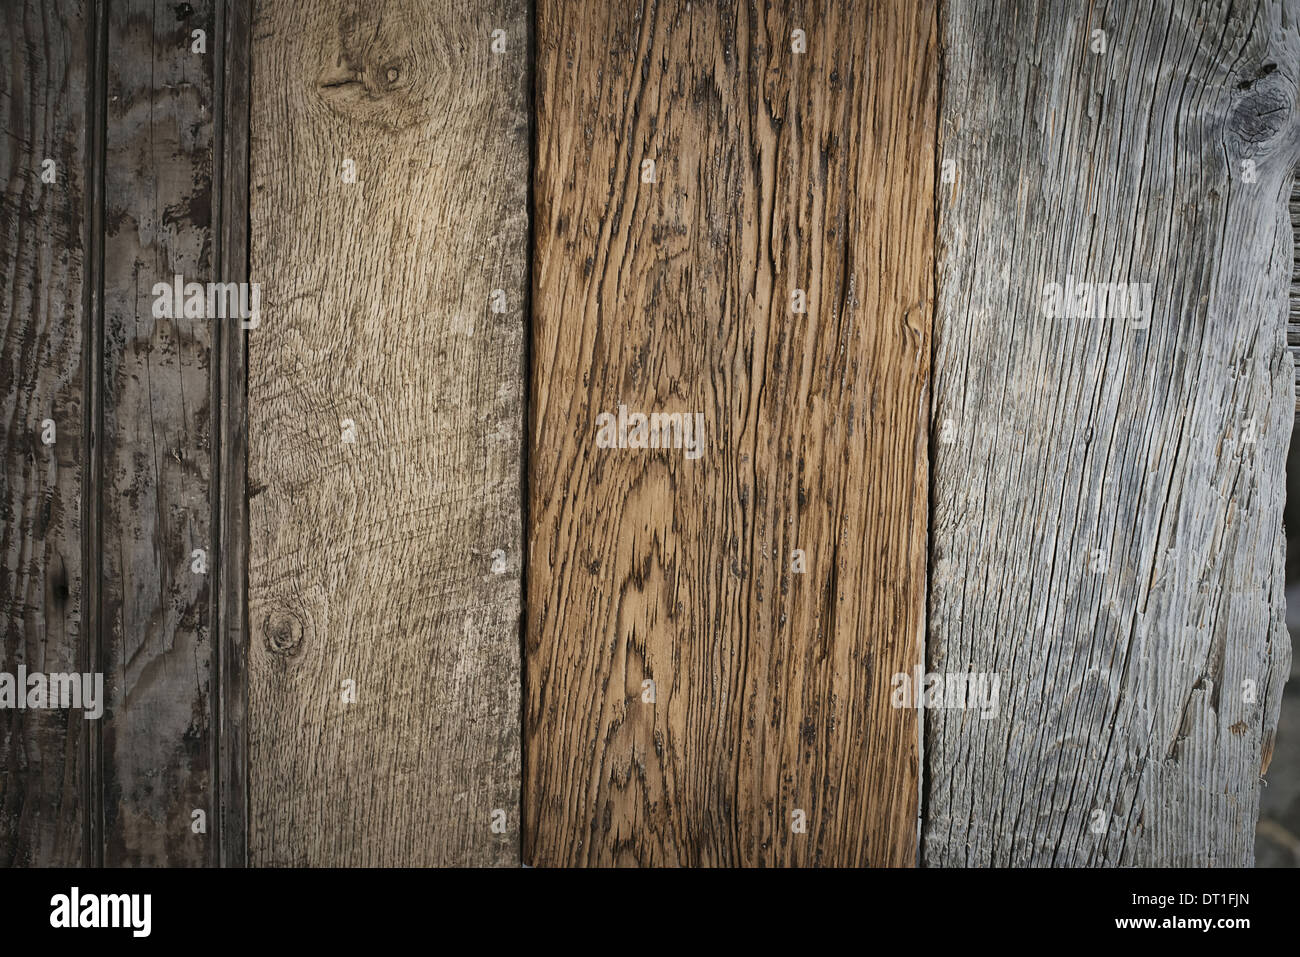 Un montón de tablones de madera recuperada reciclado de madera ambientalmente responsables, variedades de madera con grano y detalles de color Foto de stock